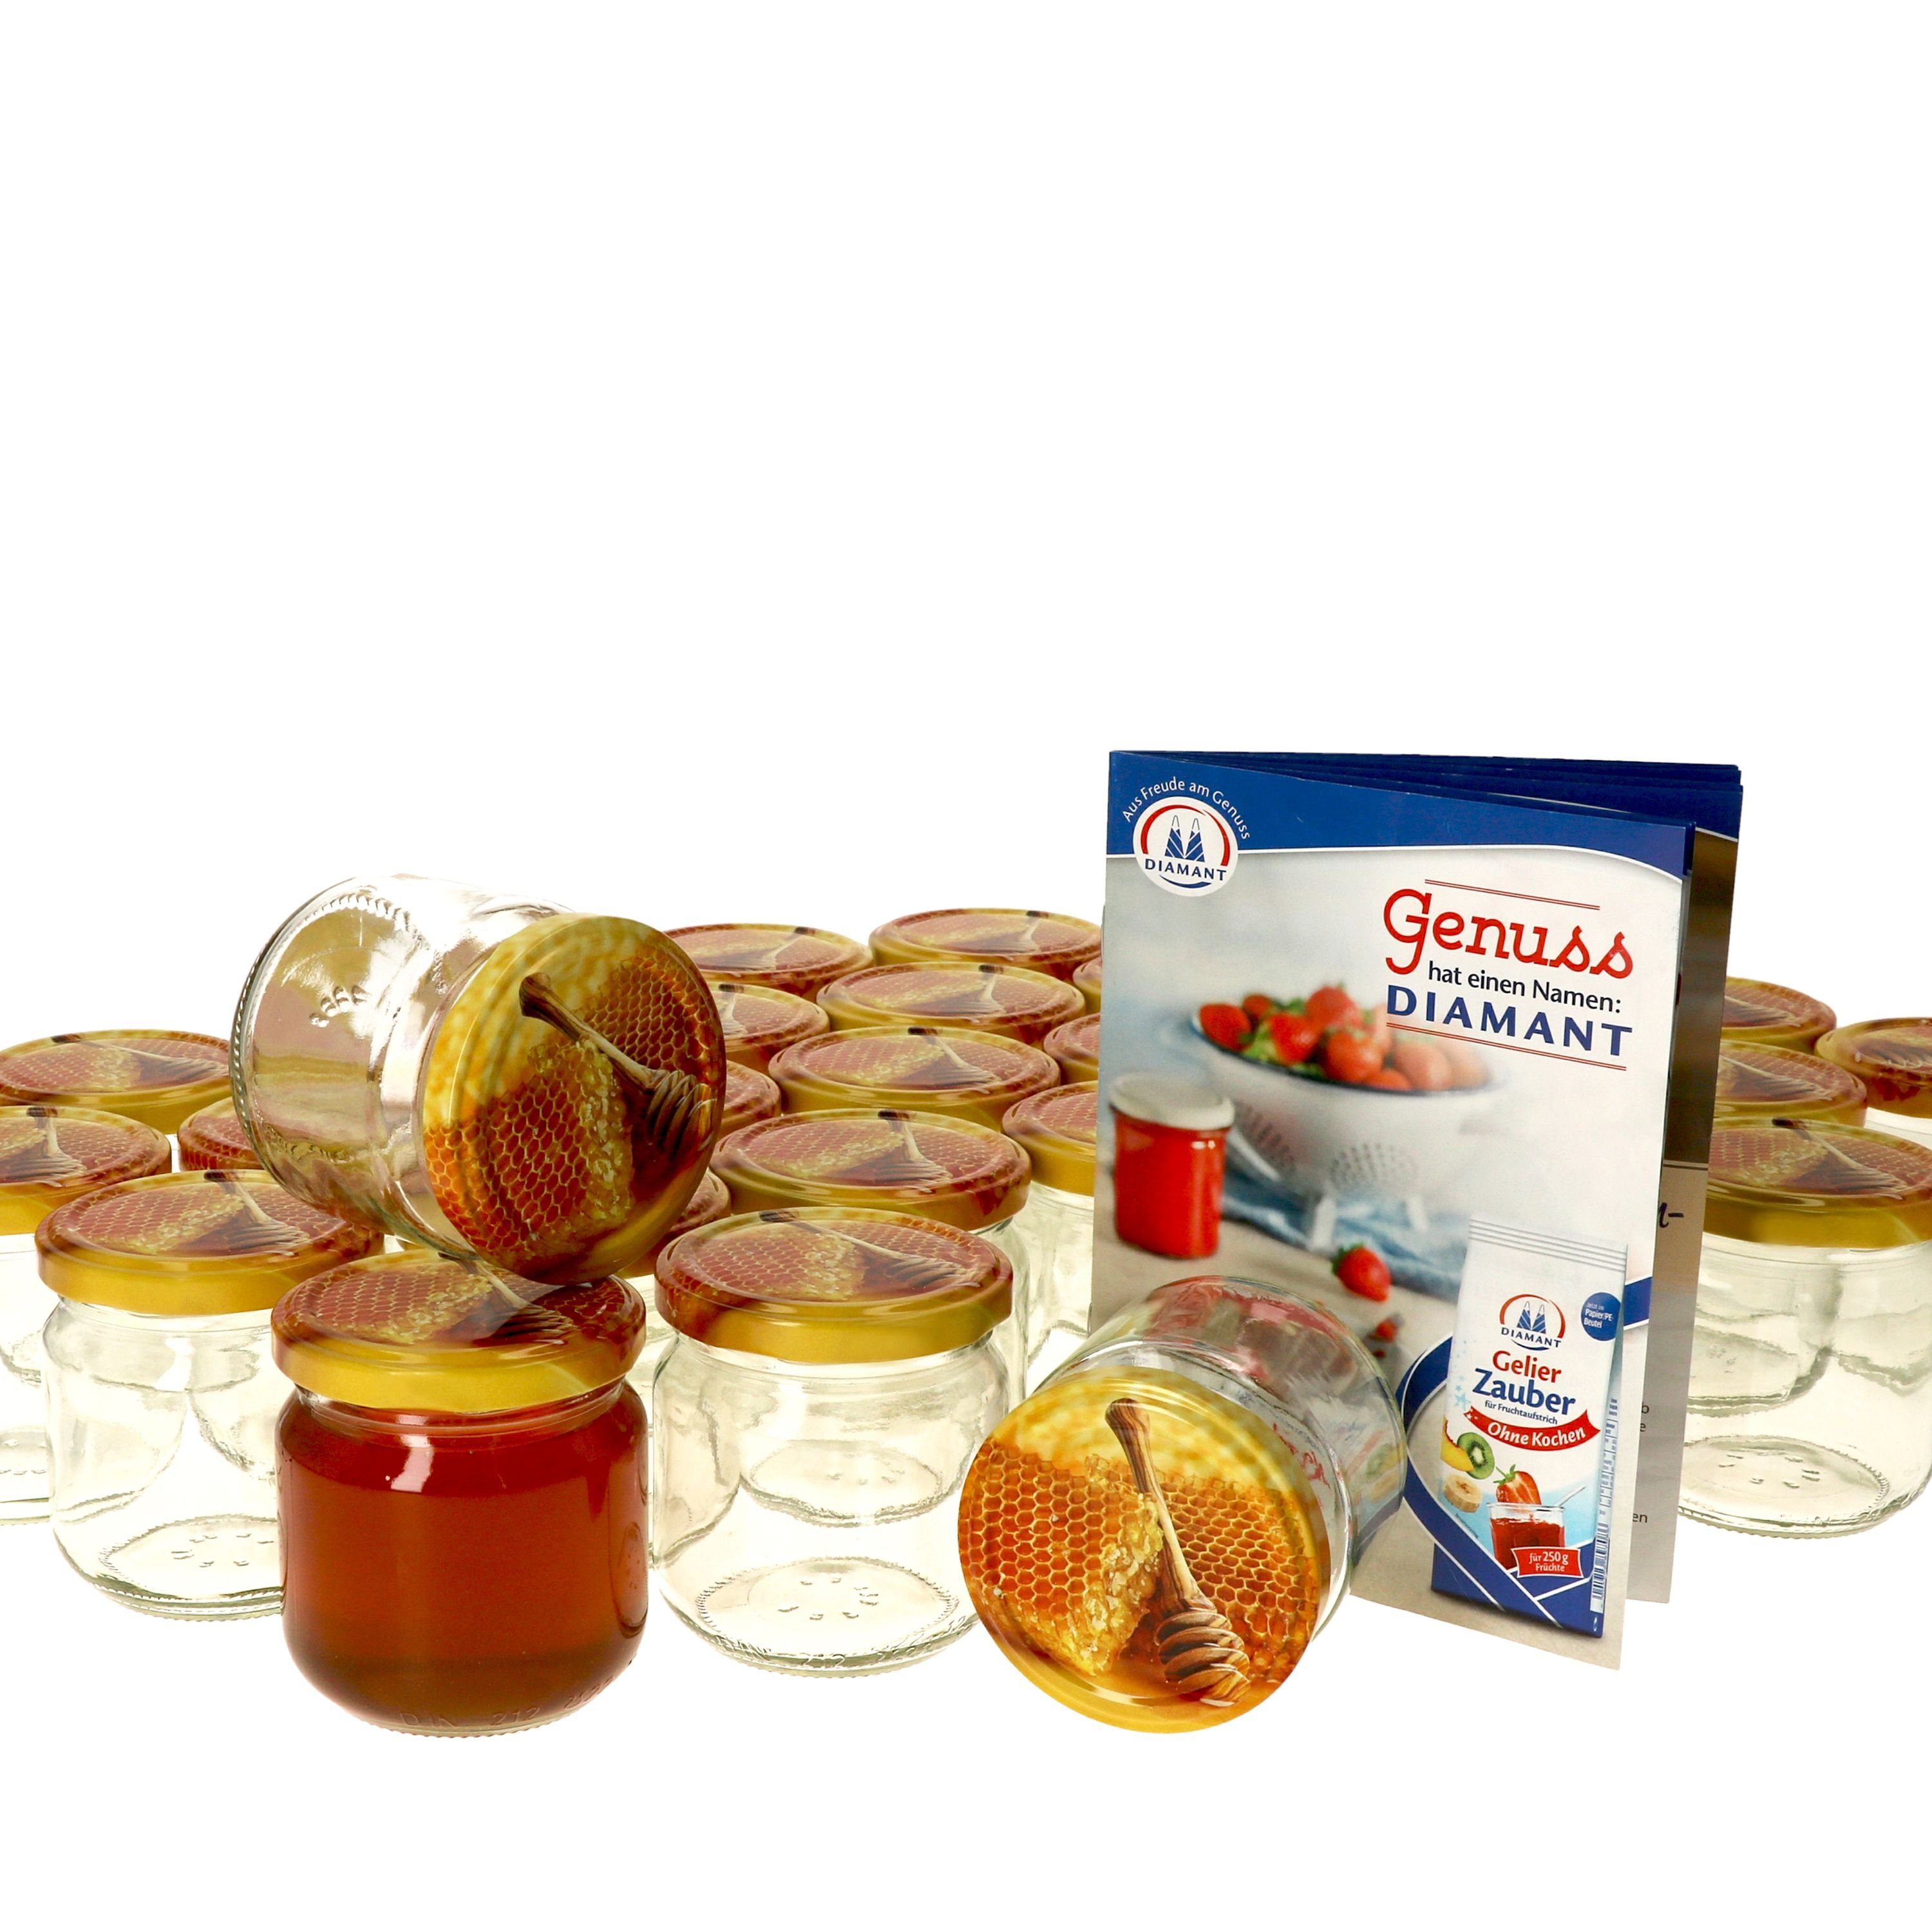 MamboCat Einmachglas 50er Set Rundglas 212 ml nieder Carino To 66 Deckel mit Honigwabe, Glas